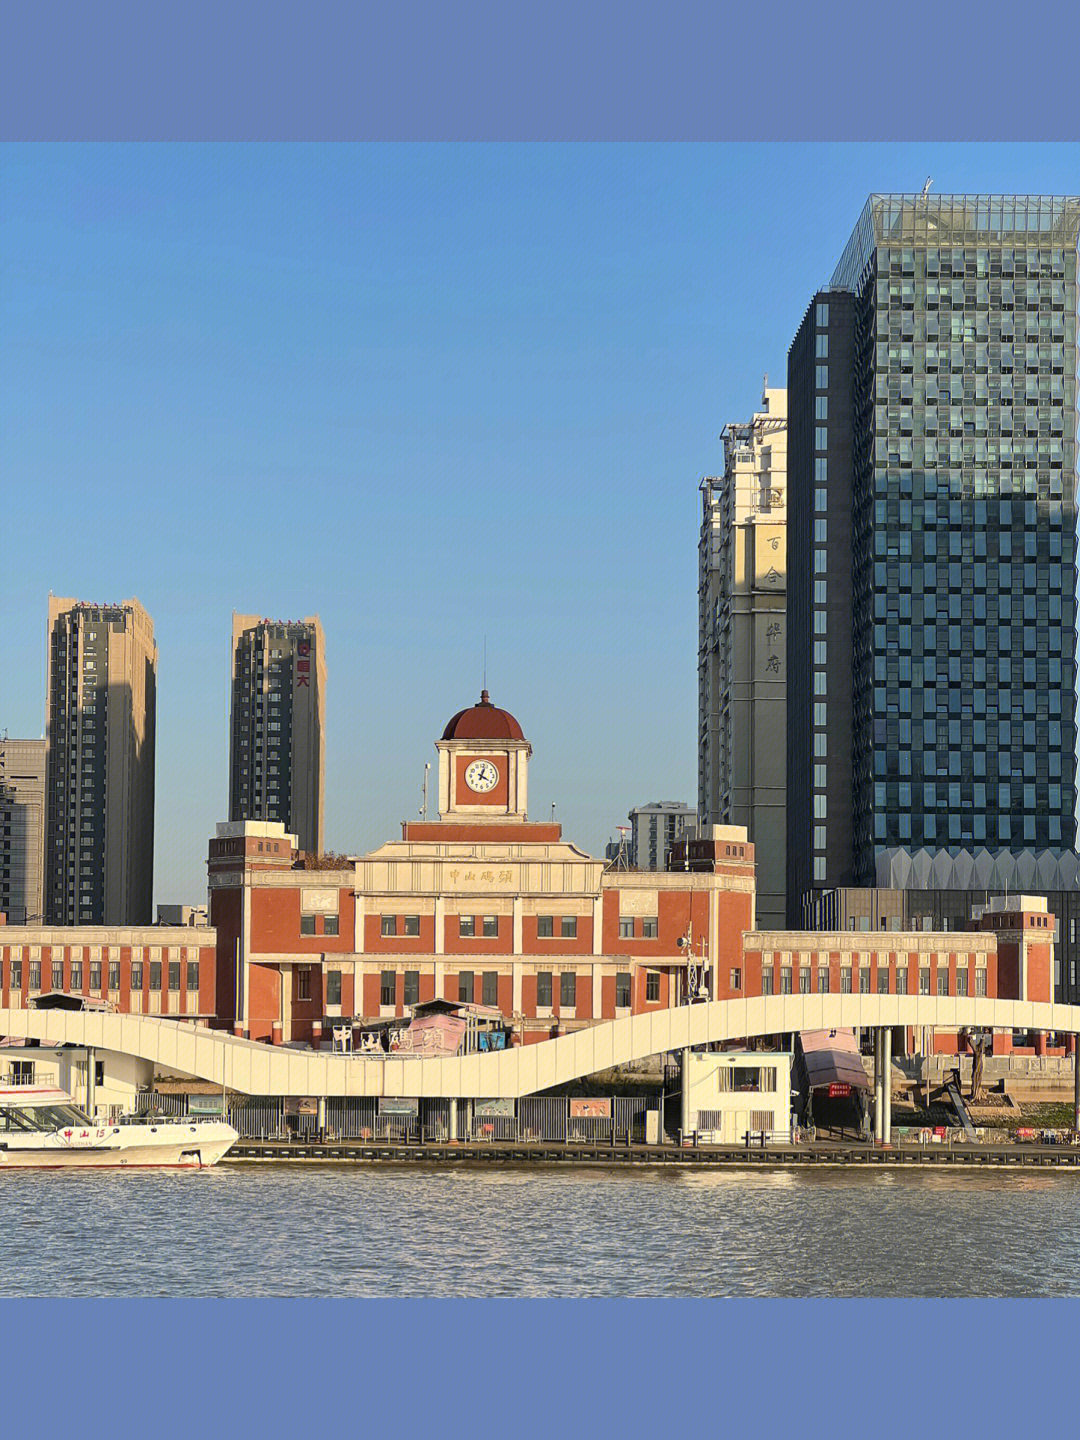 中山港货运码头图片